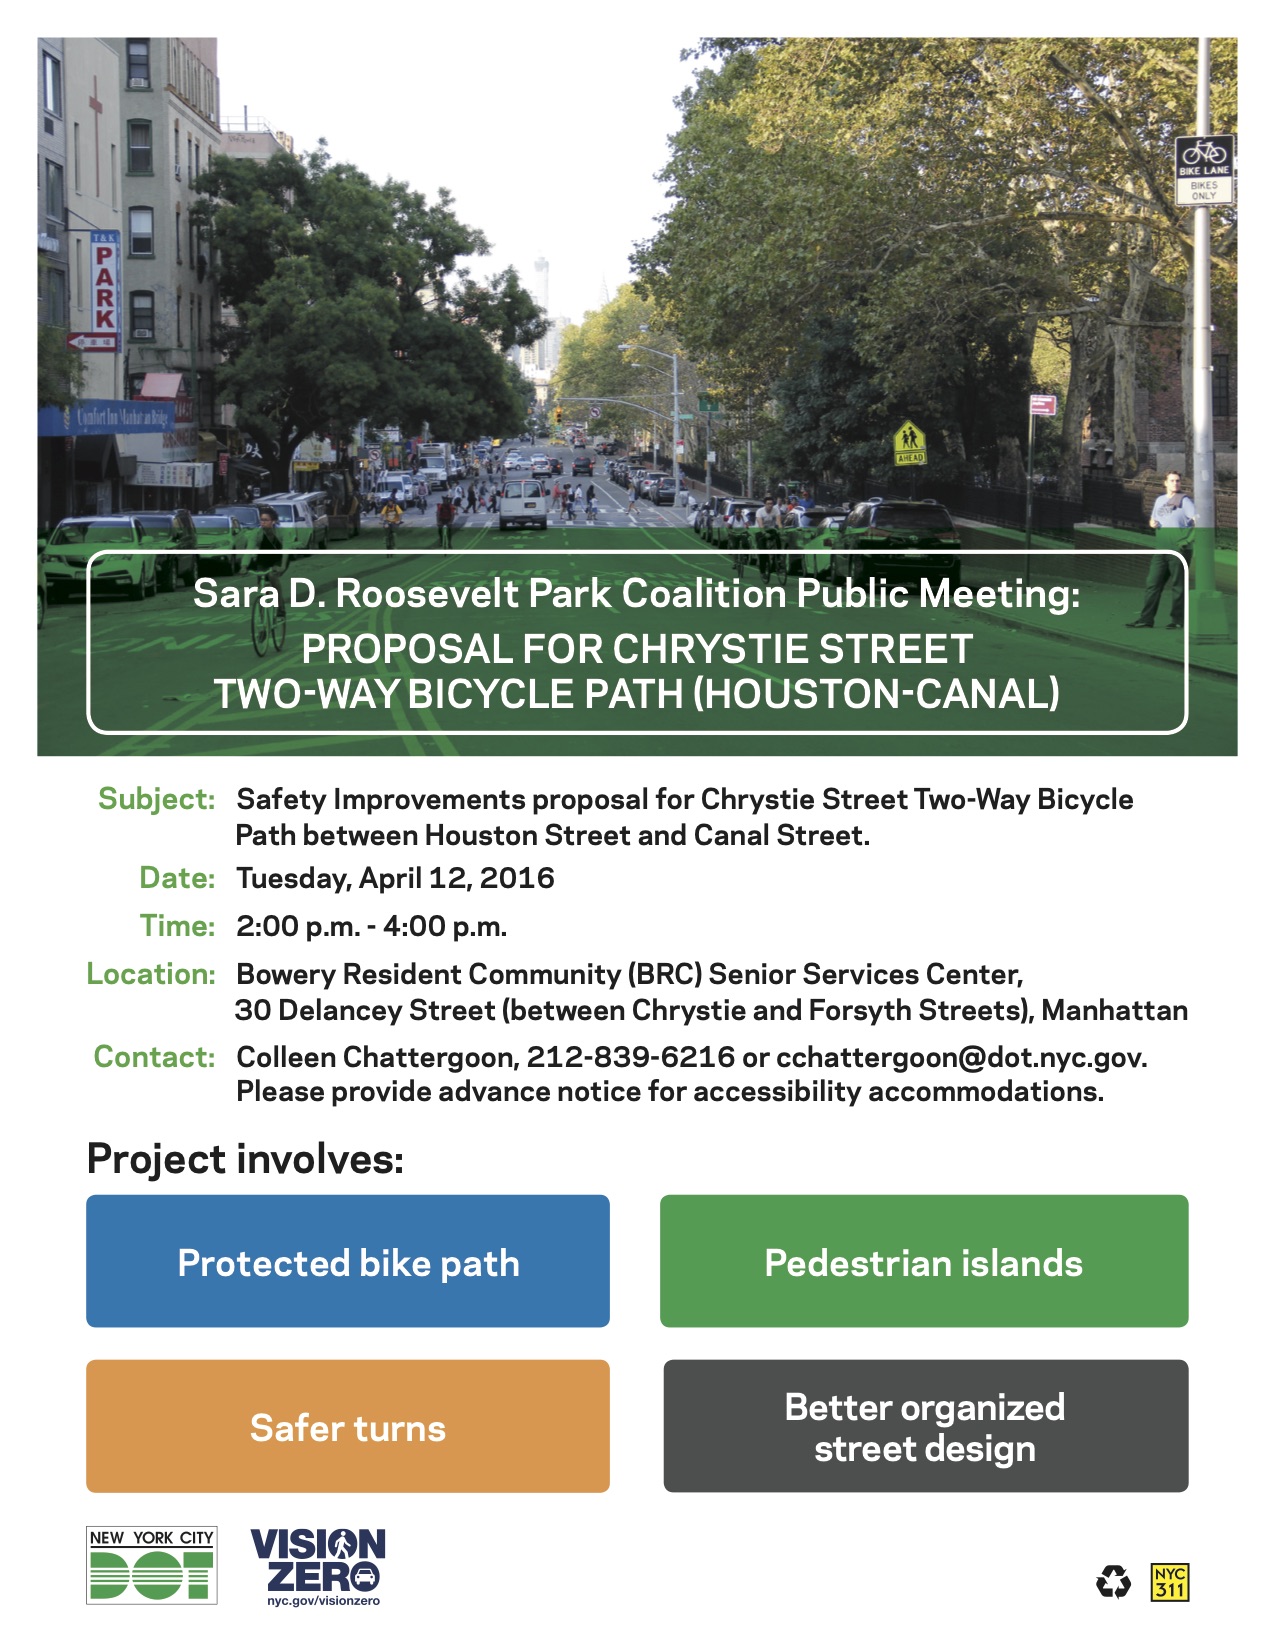 Flyer for SDR Coalition Meeting on Chrystie Street Bike Lane